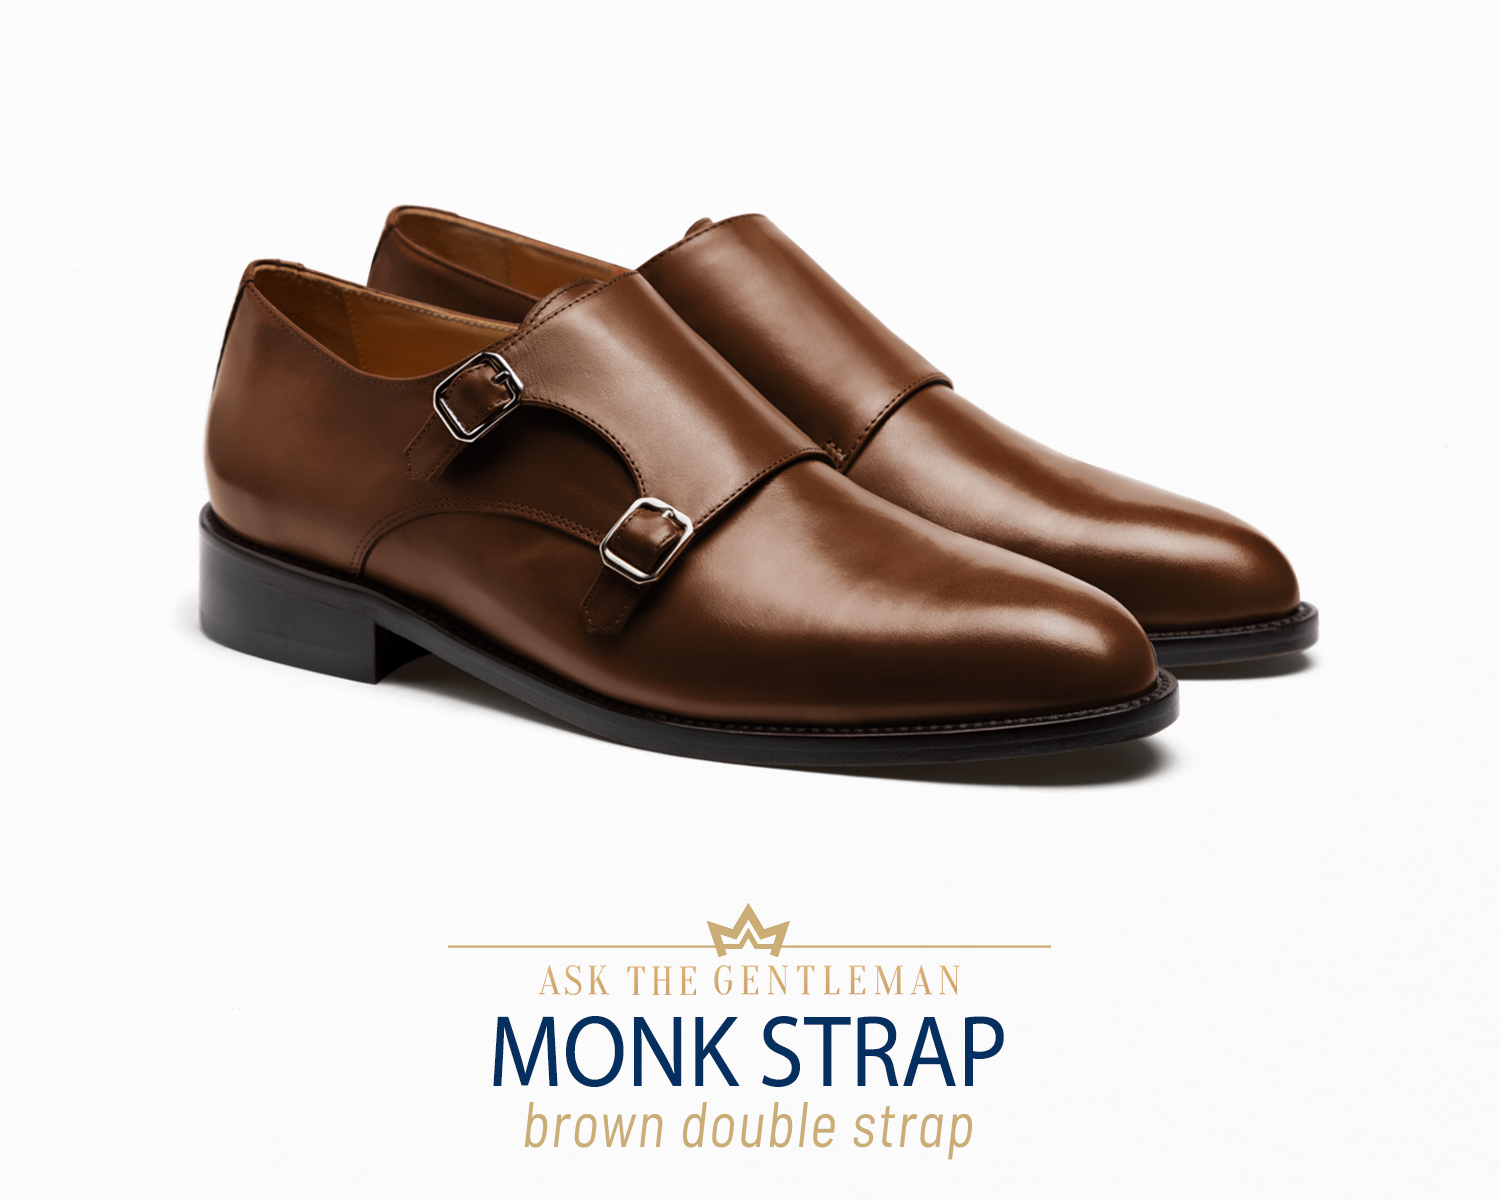 Monk strap dress shoe type